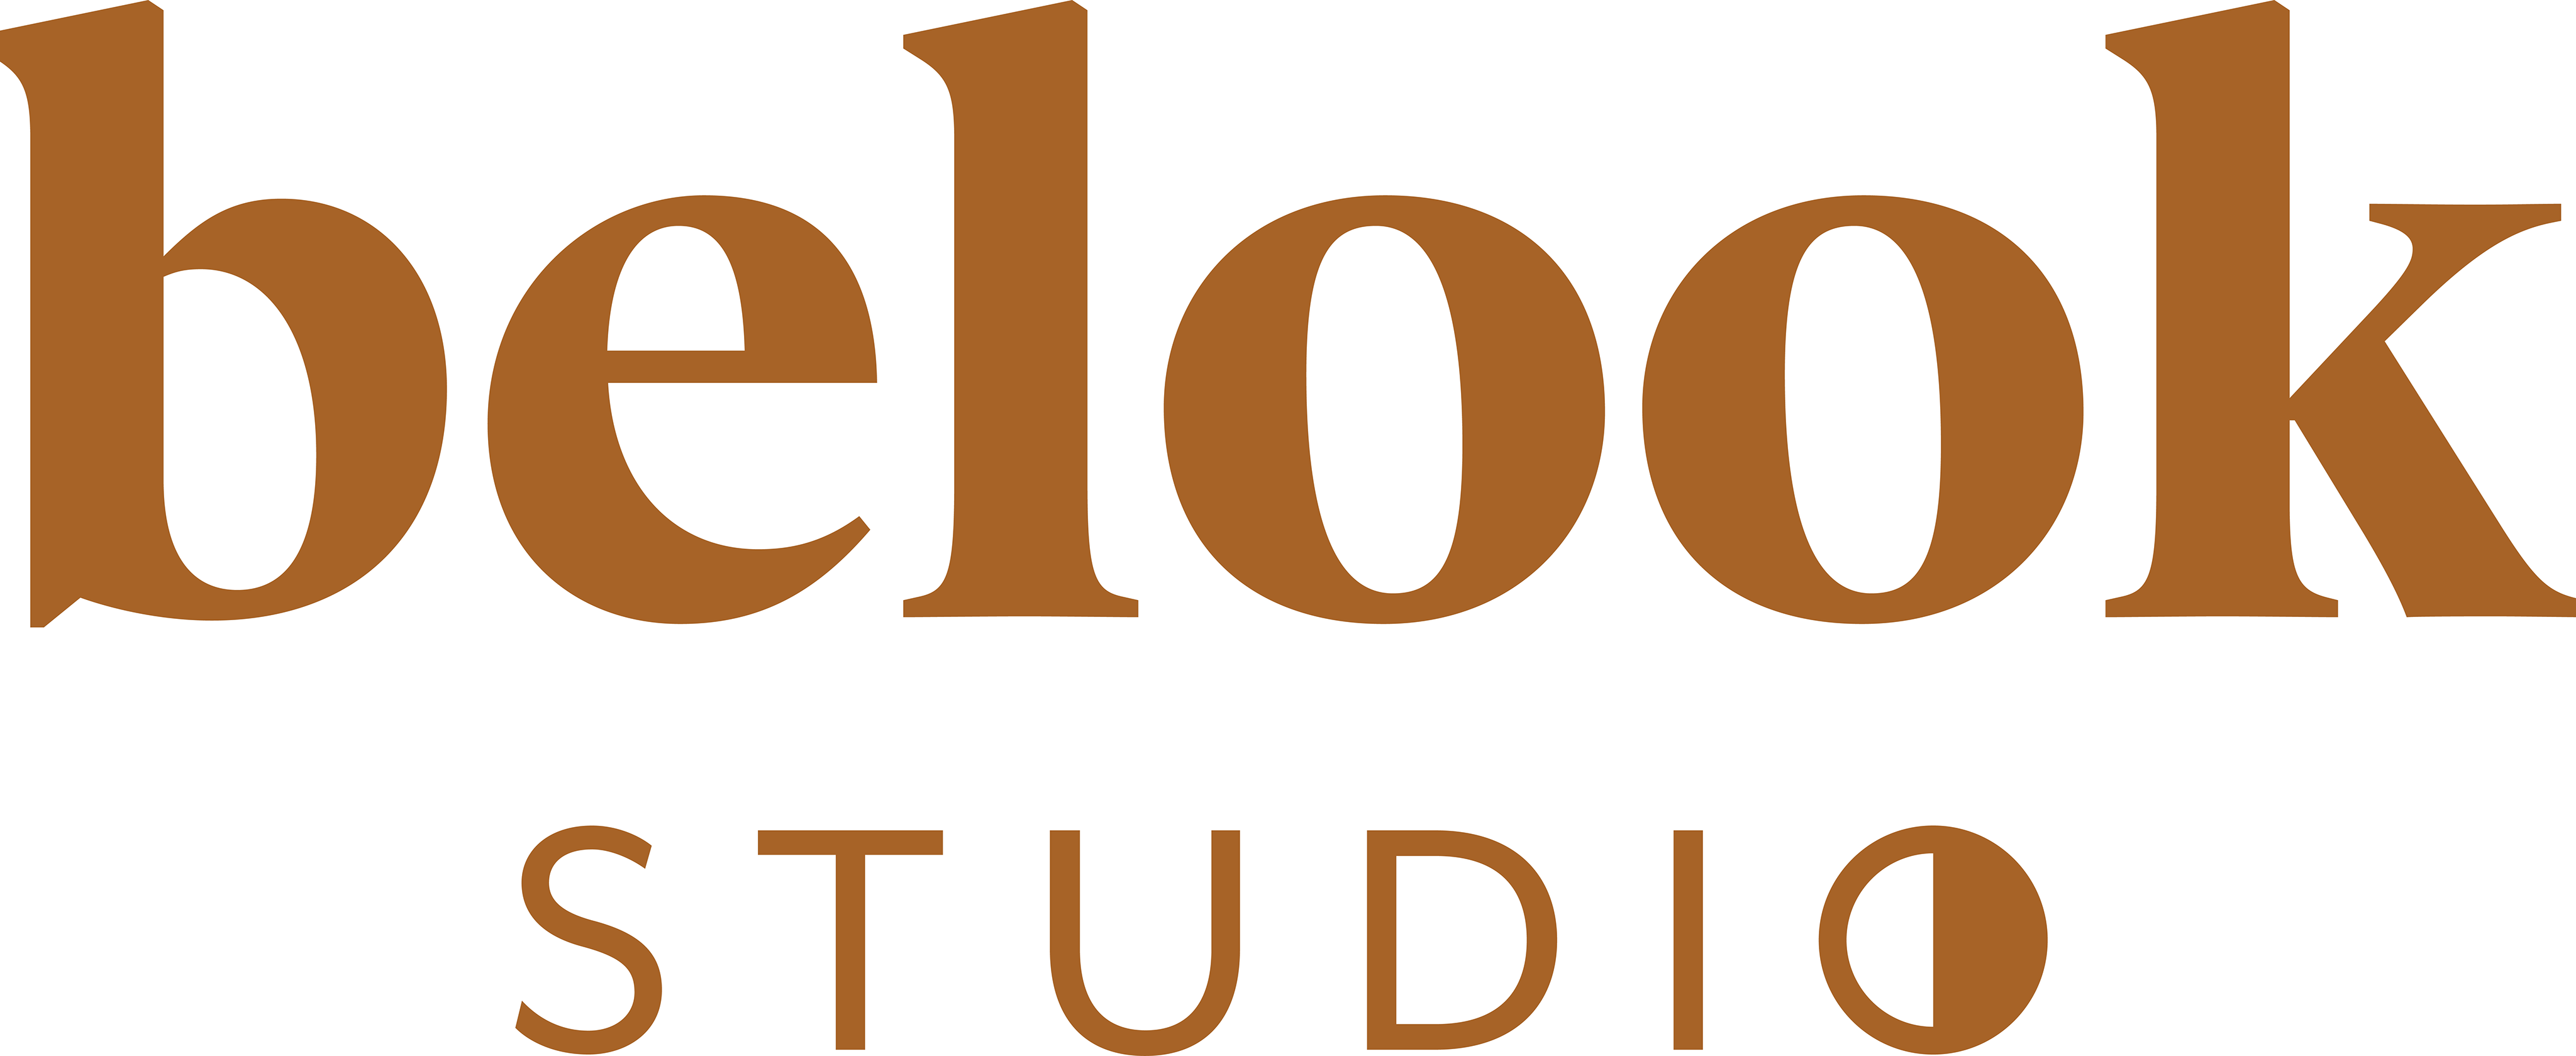 Belook Studio